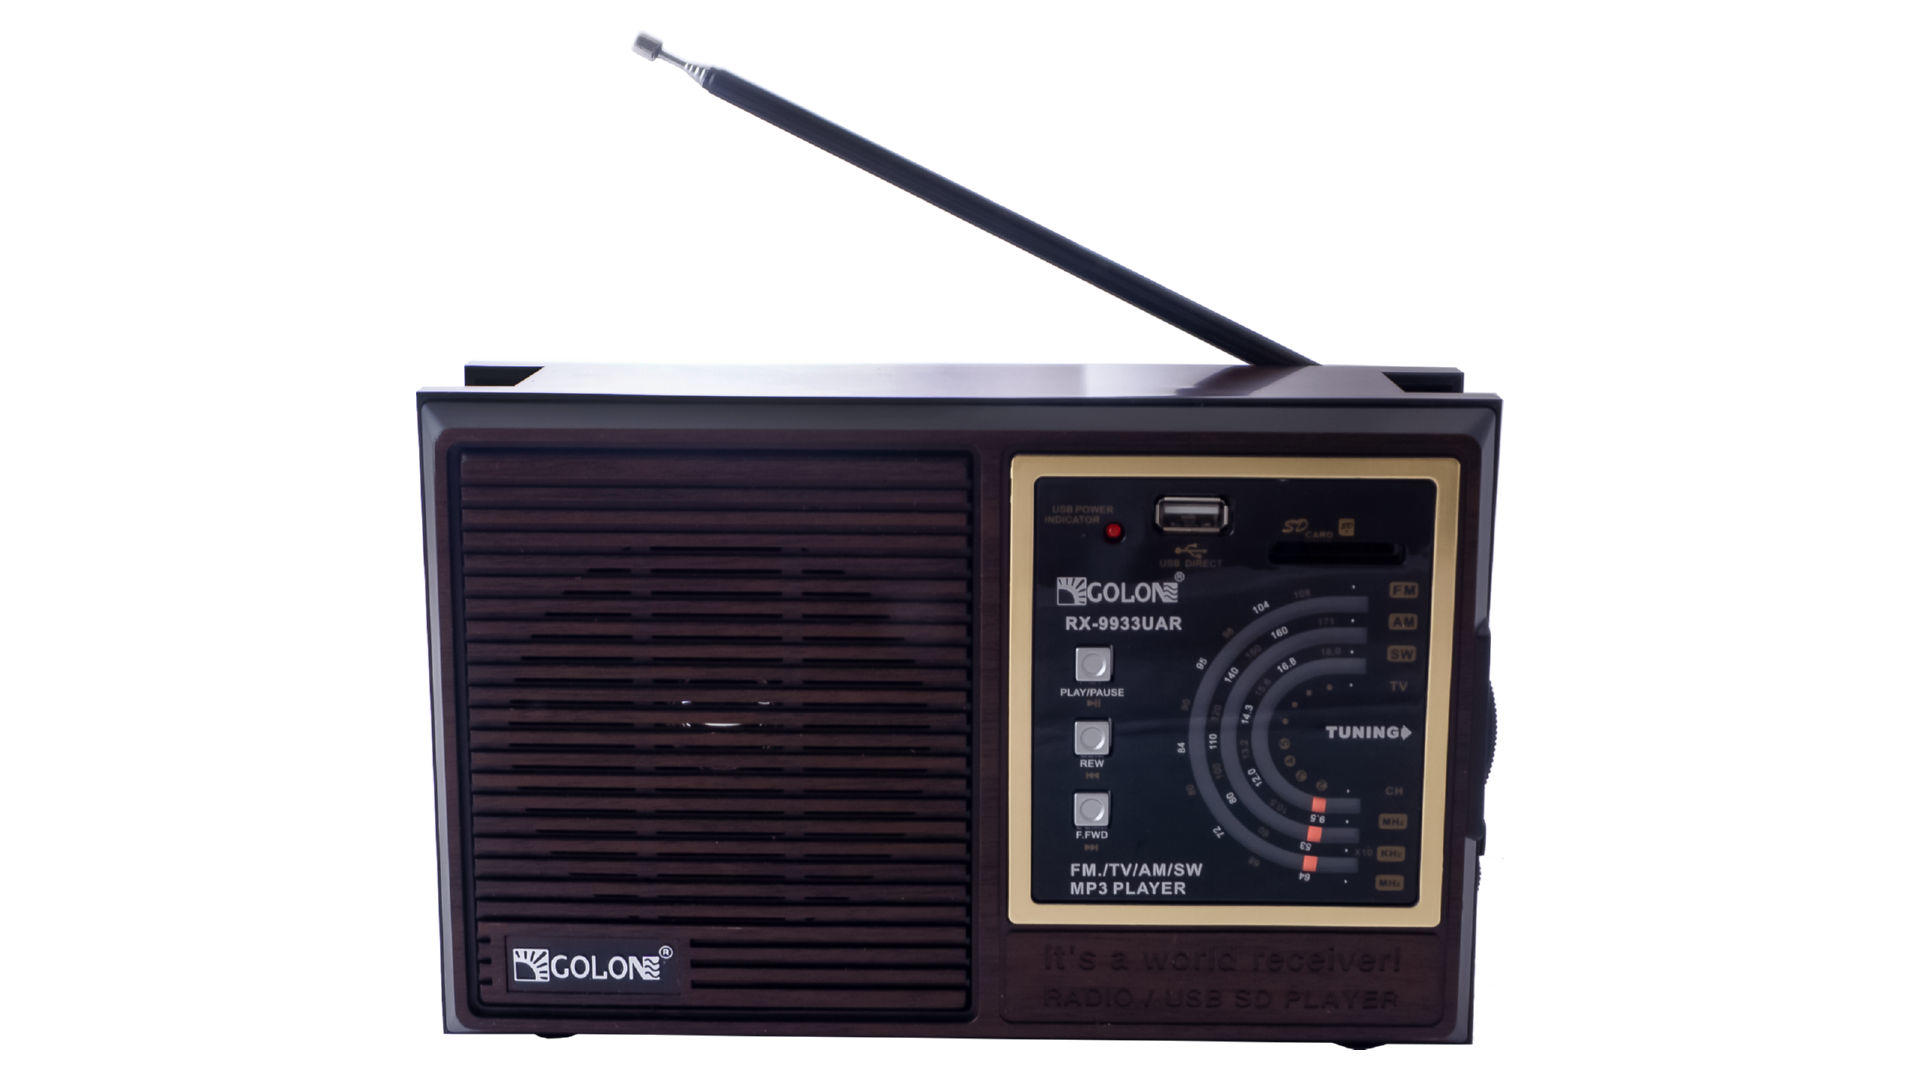 Радиоприемник Golon - RX-9933UAR 5